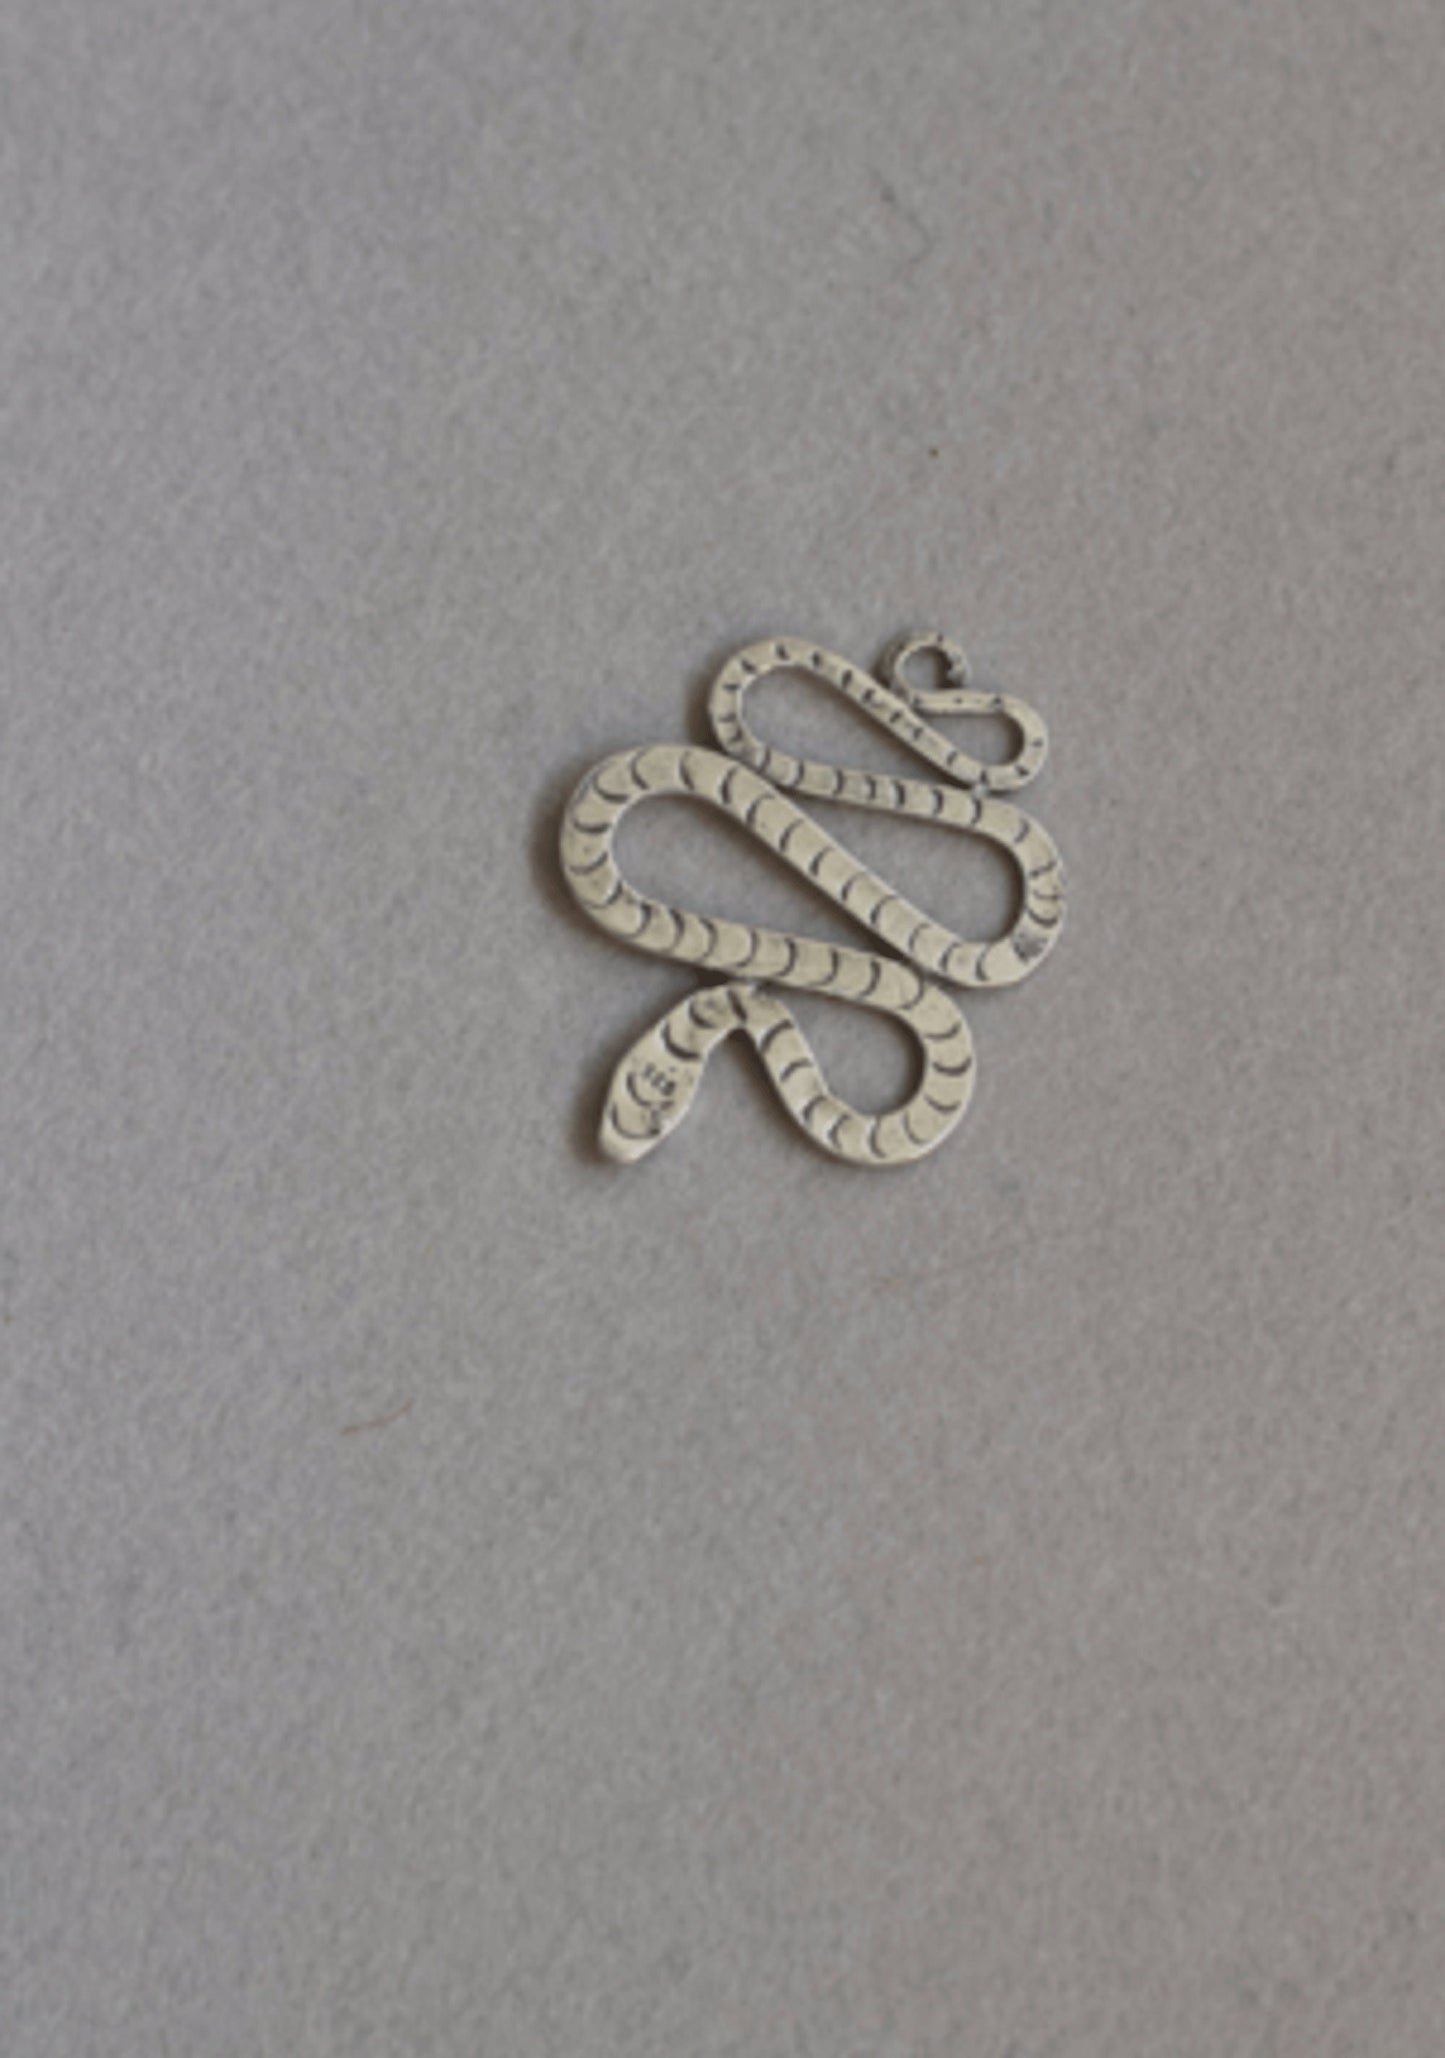 Mini Snake necklace